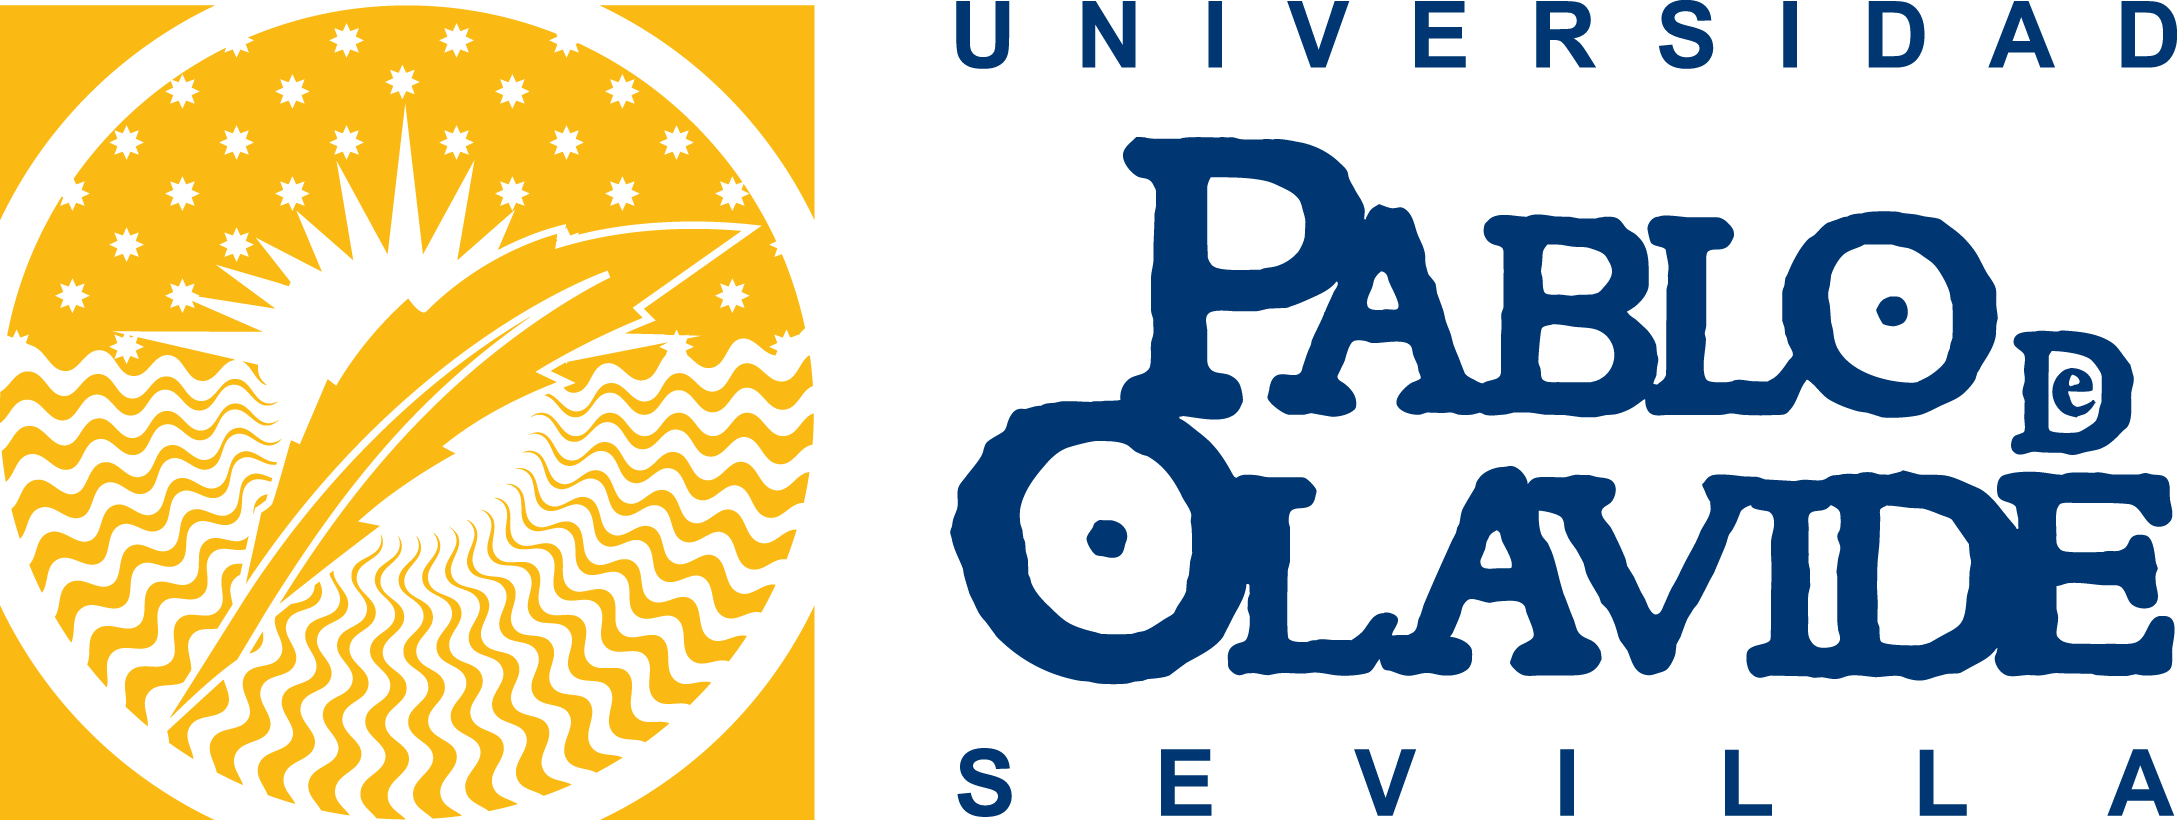 UPO-logo